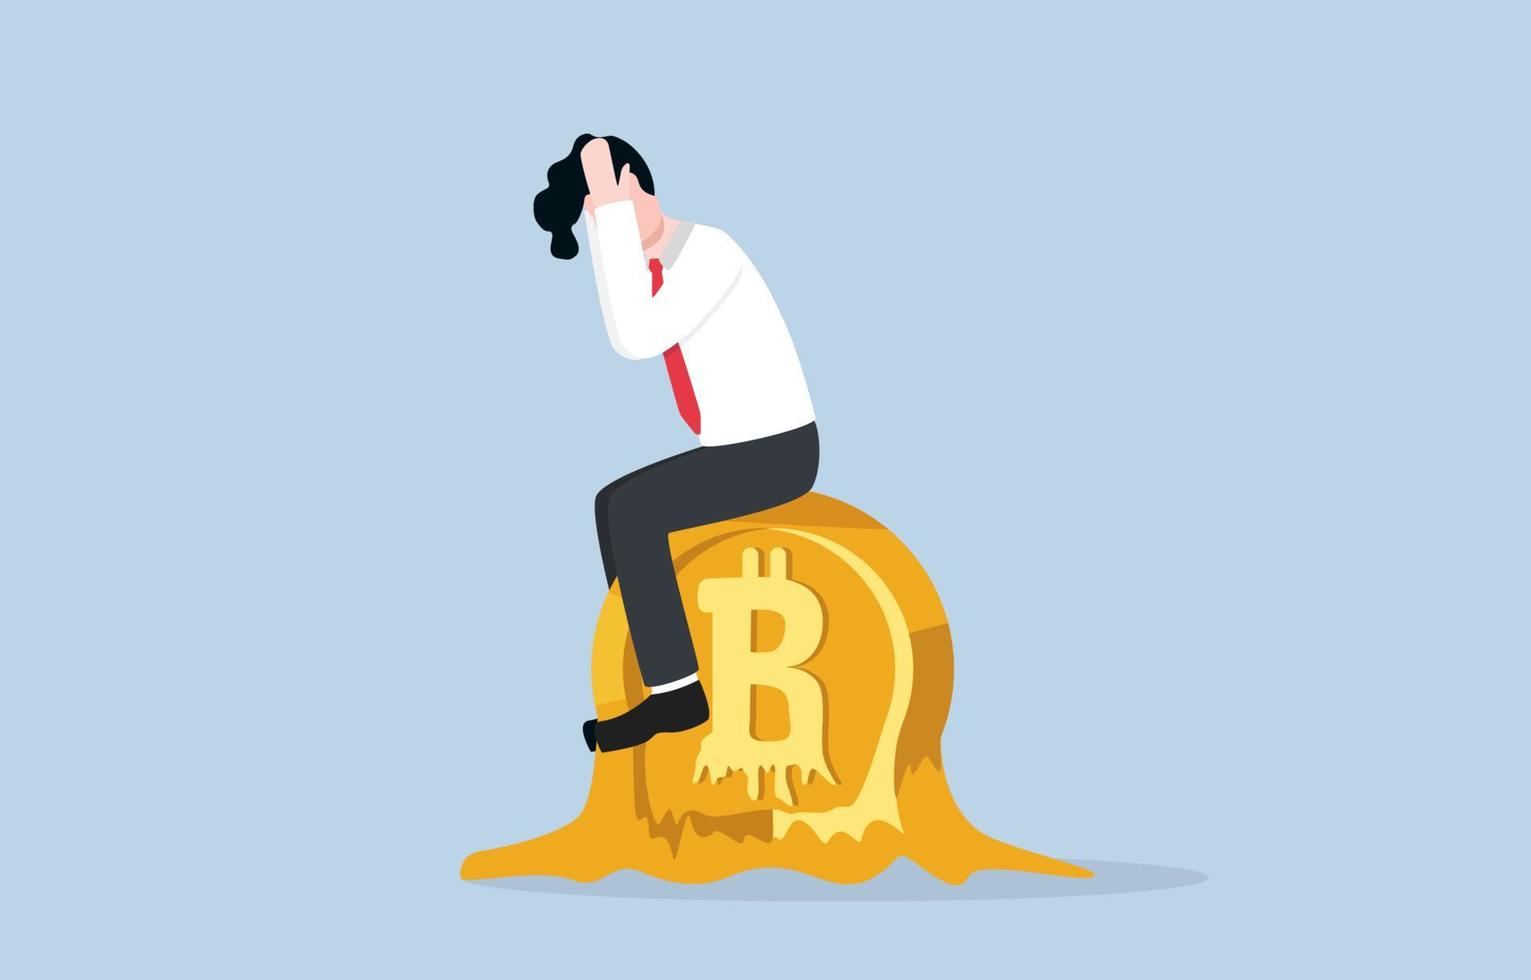 fallender bitcoin- oder kryptowährungspreis, falsche spekulationen in digitalen vermögenswerten führen dazu, dass investoren geld verlieren, fluktuation und unsicherheitskonzept. depressiver geschäftsmann, der auf schmelzendem bitcoin sitzt. vektor